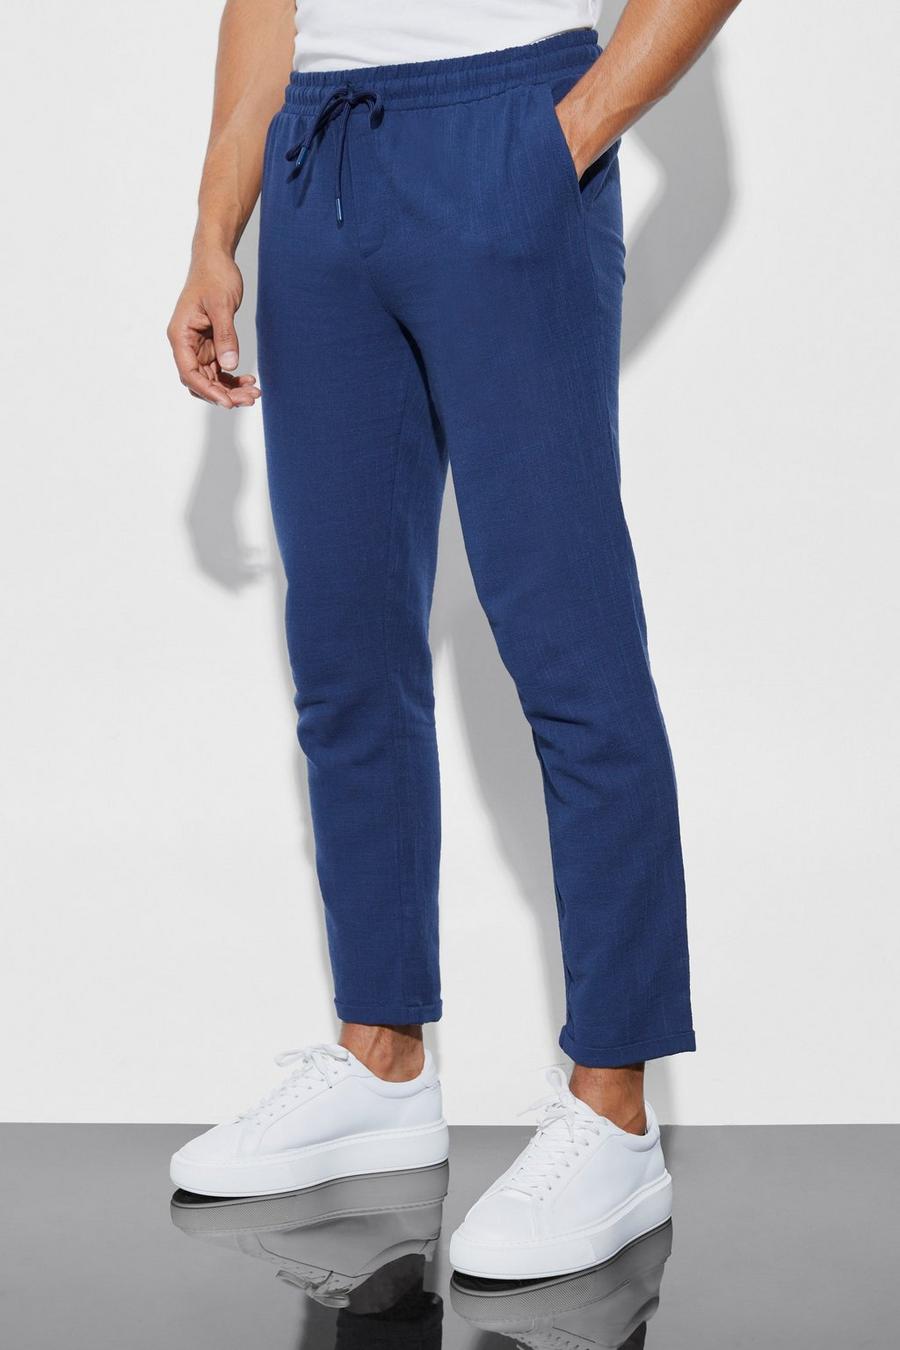 Pantalón entallado elástico ajustado, Navy blu oltremare